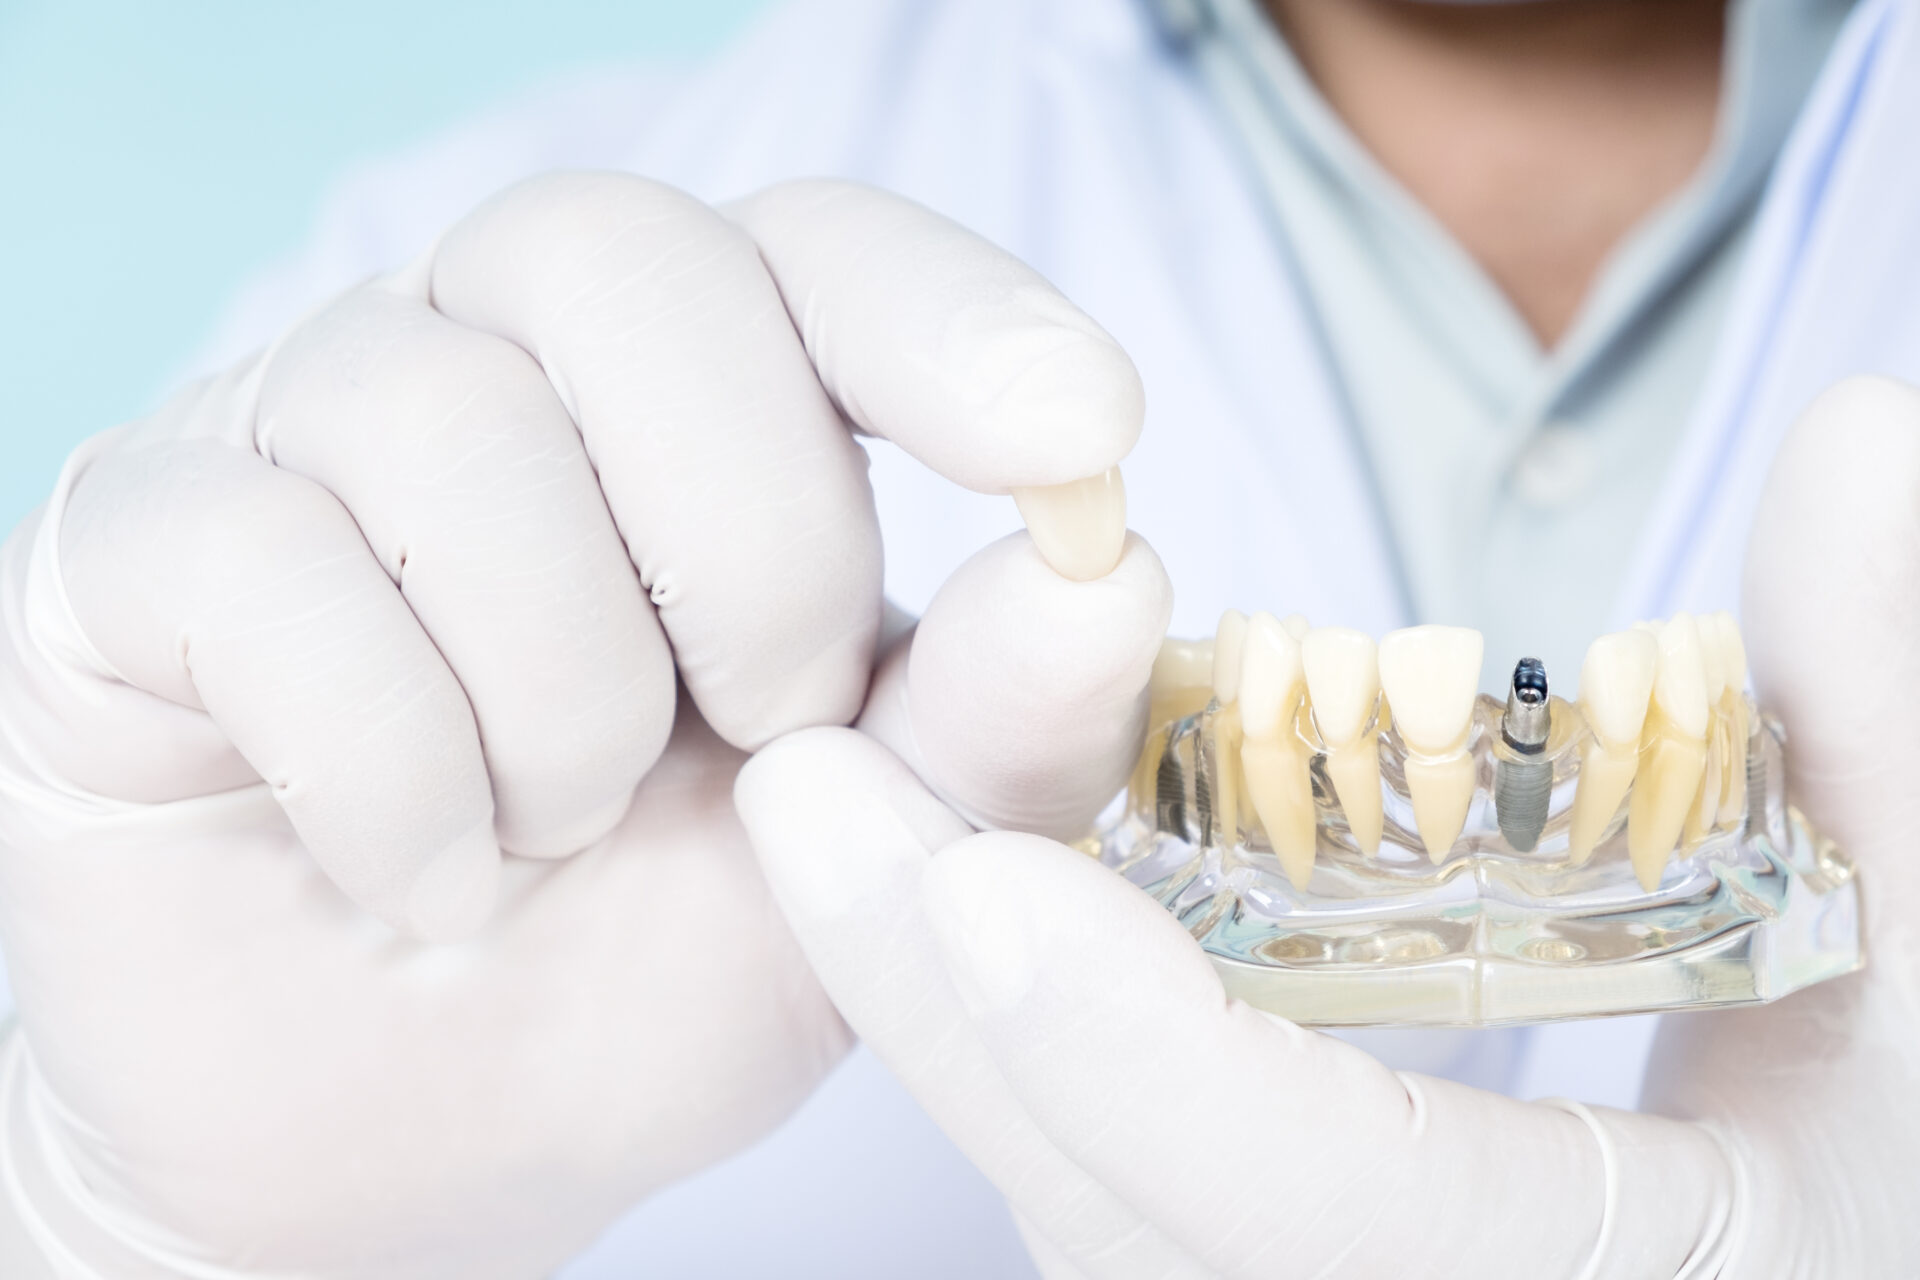 インプラントの模型を持って歯を前に出す男性歯科医師